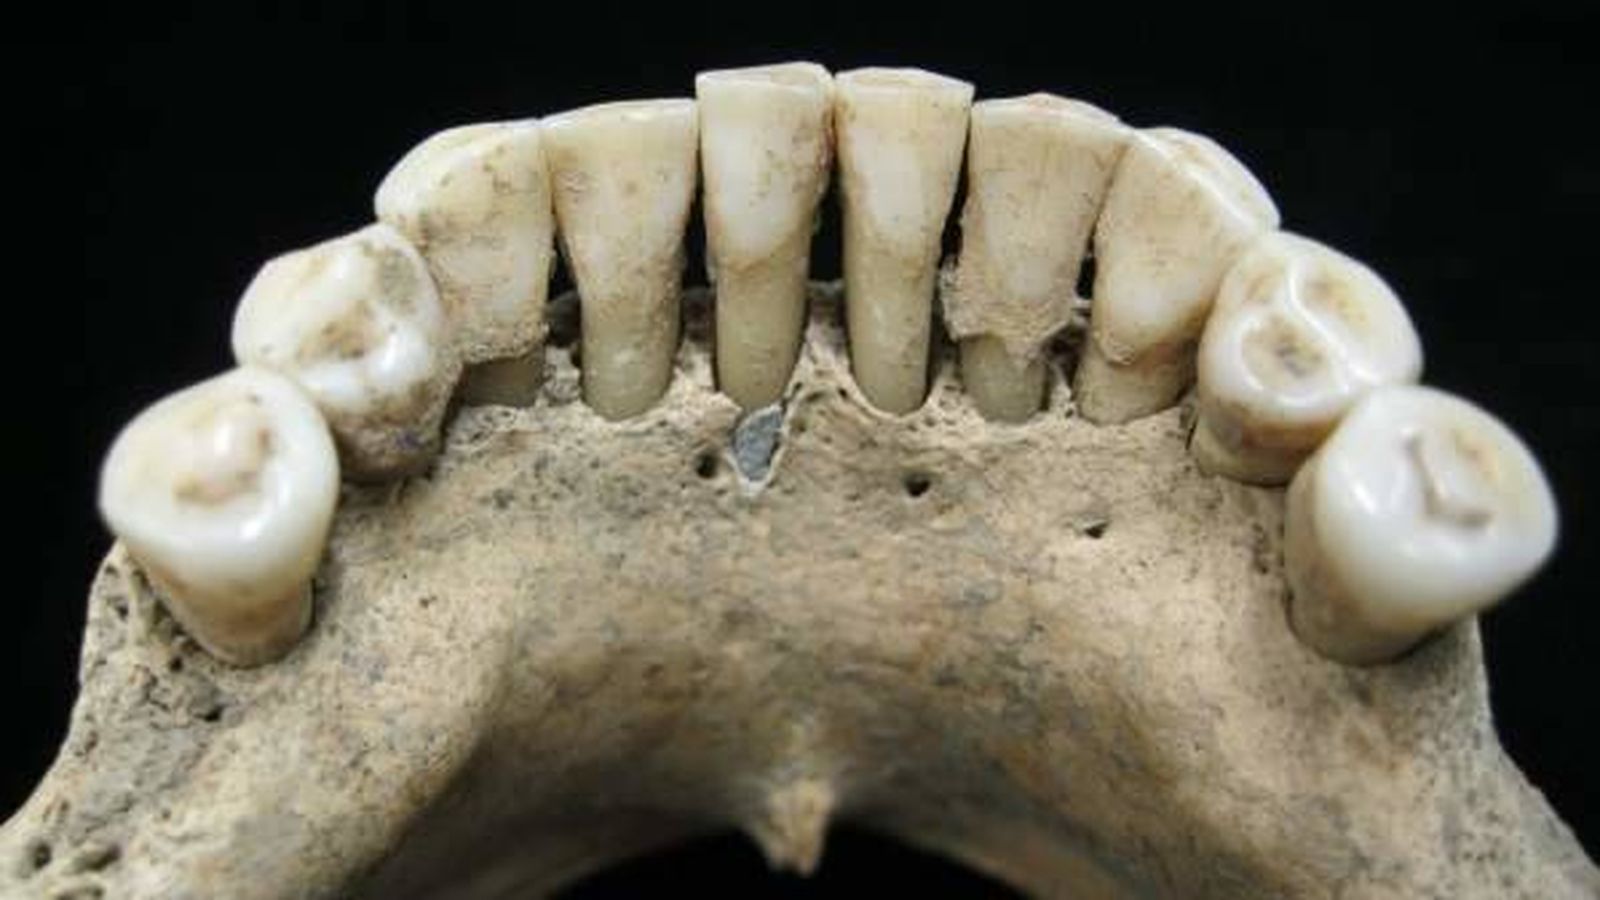 Foto: En el centro de la imagen, restos de lapislázuli hallados en la dentadura de una mujer de la Edad Media.